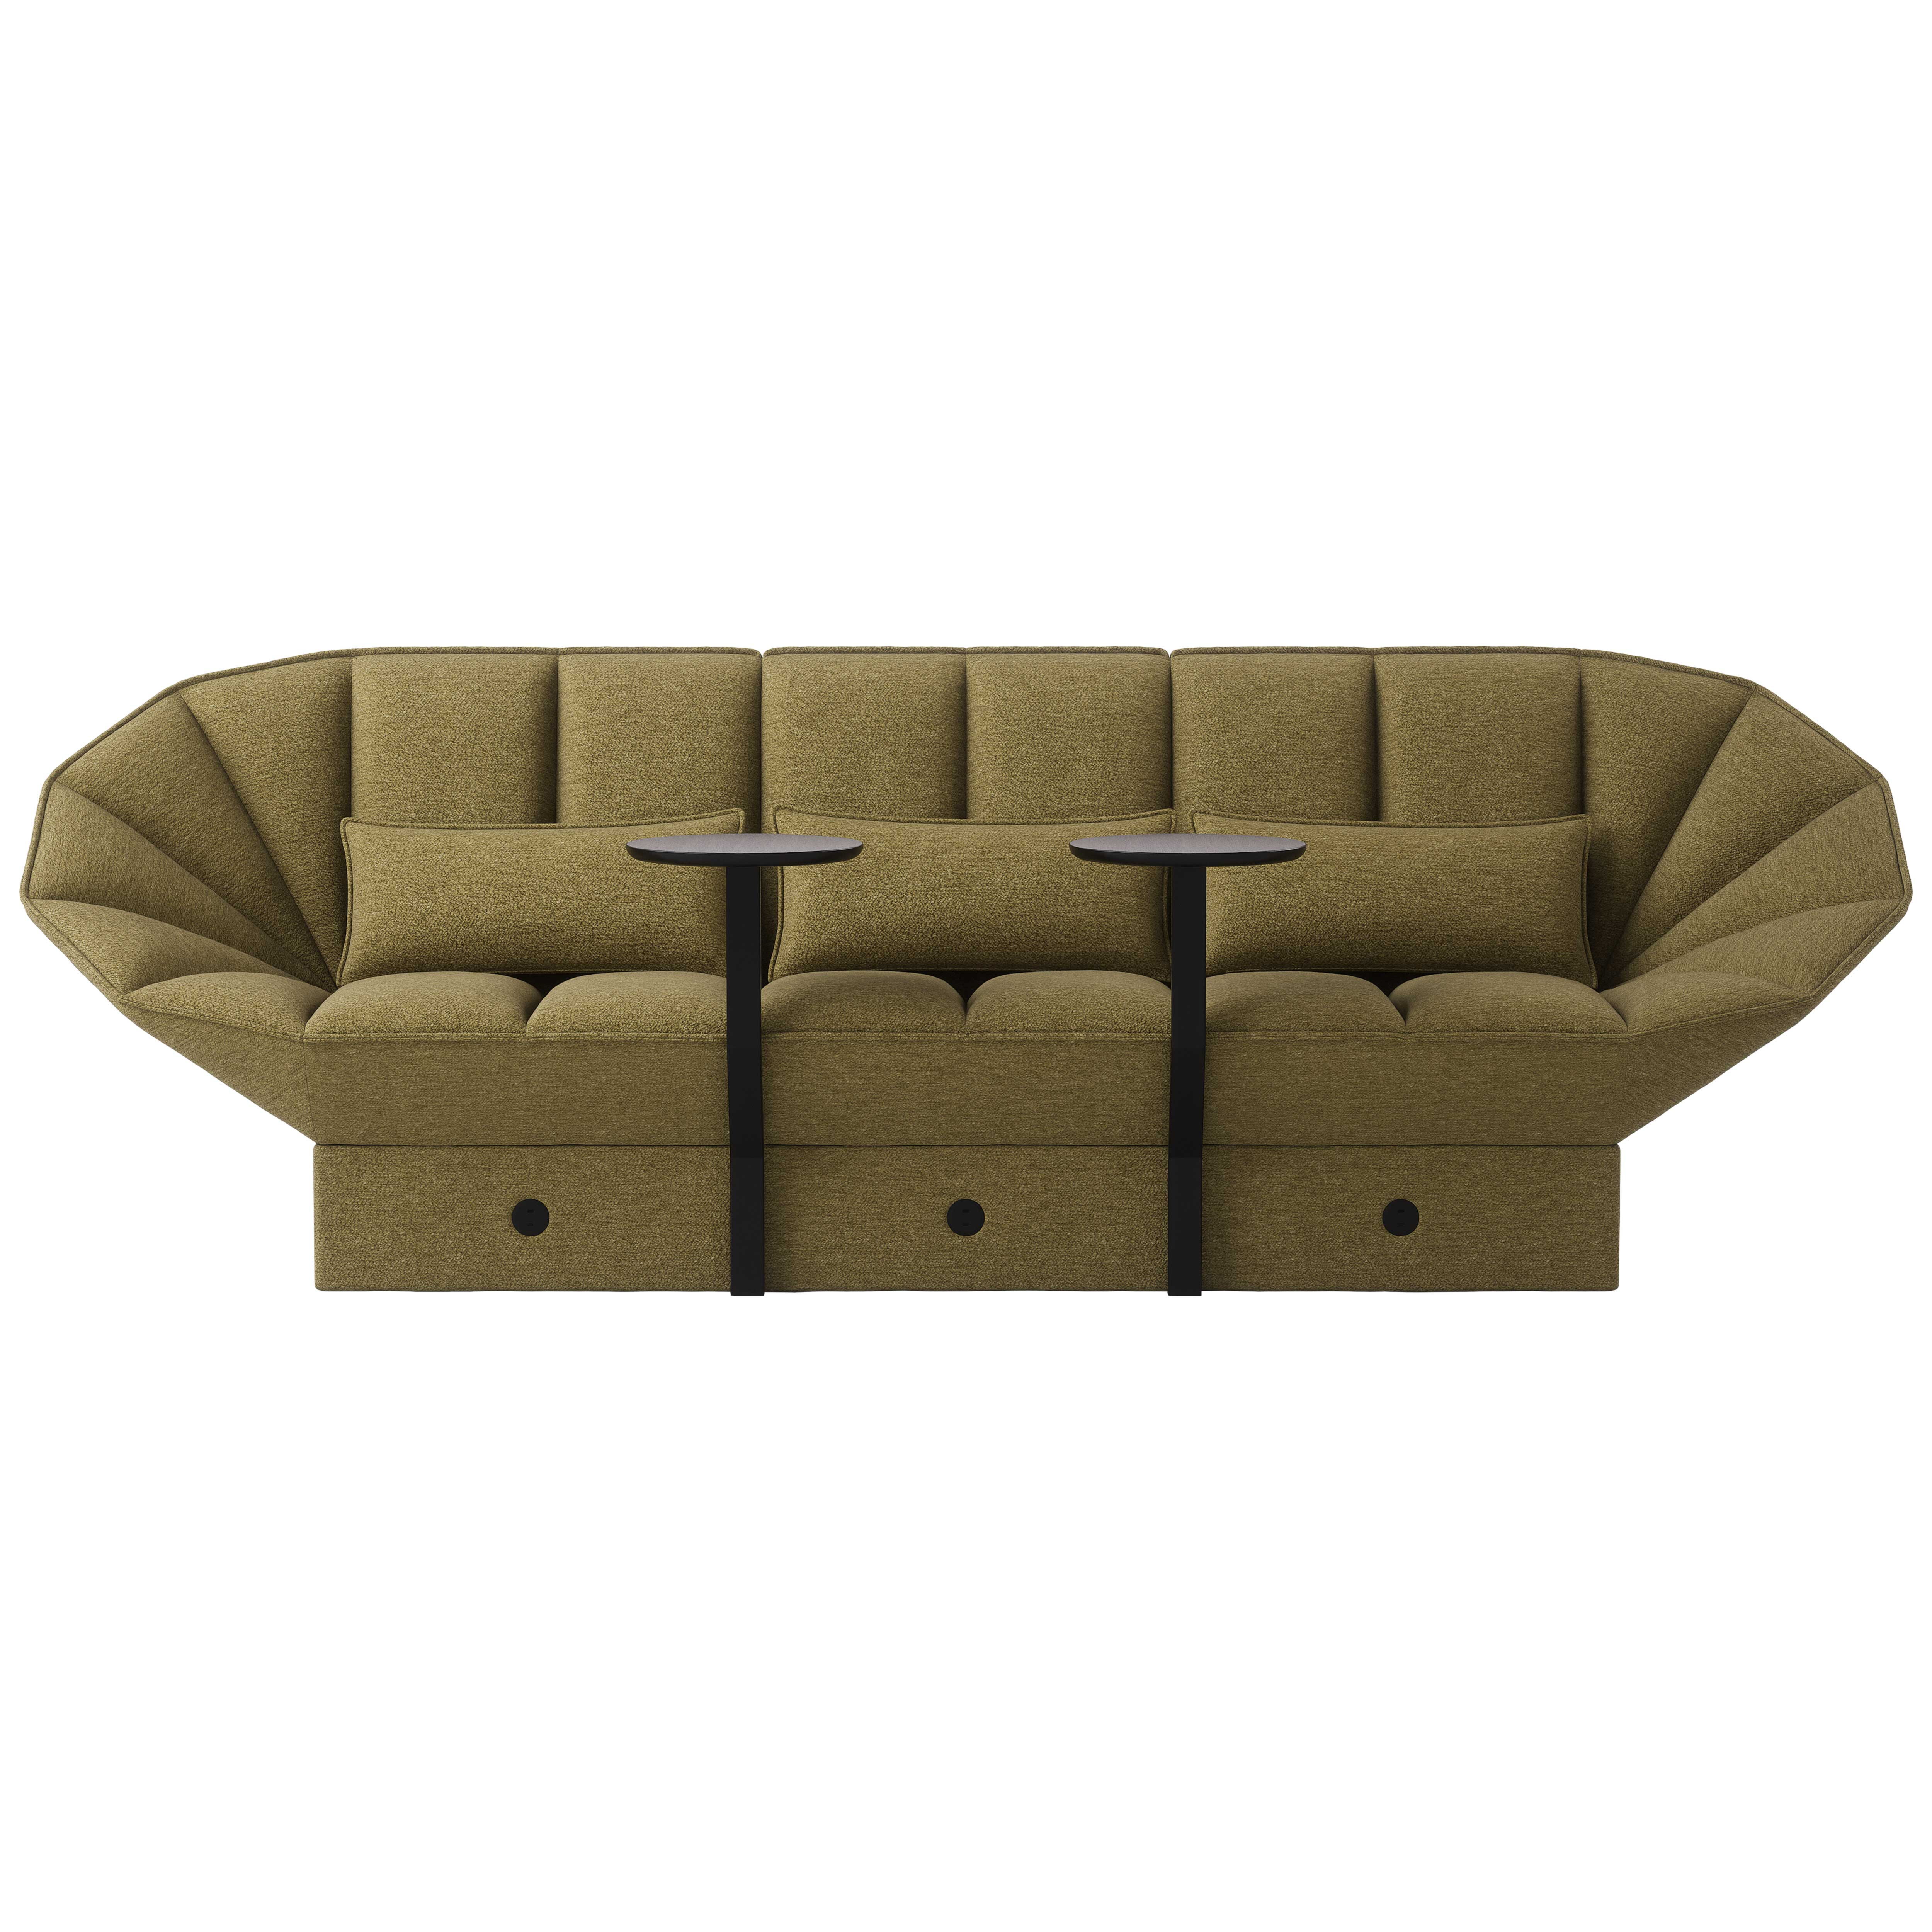 Ori 3- seater sofa product image 1